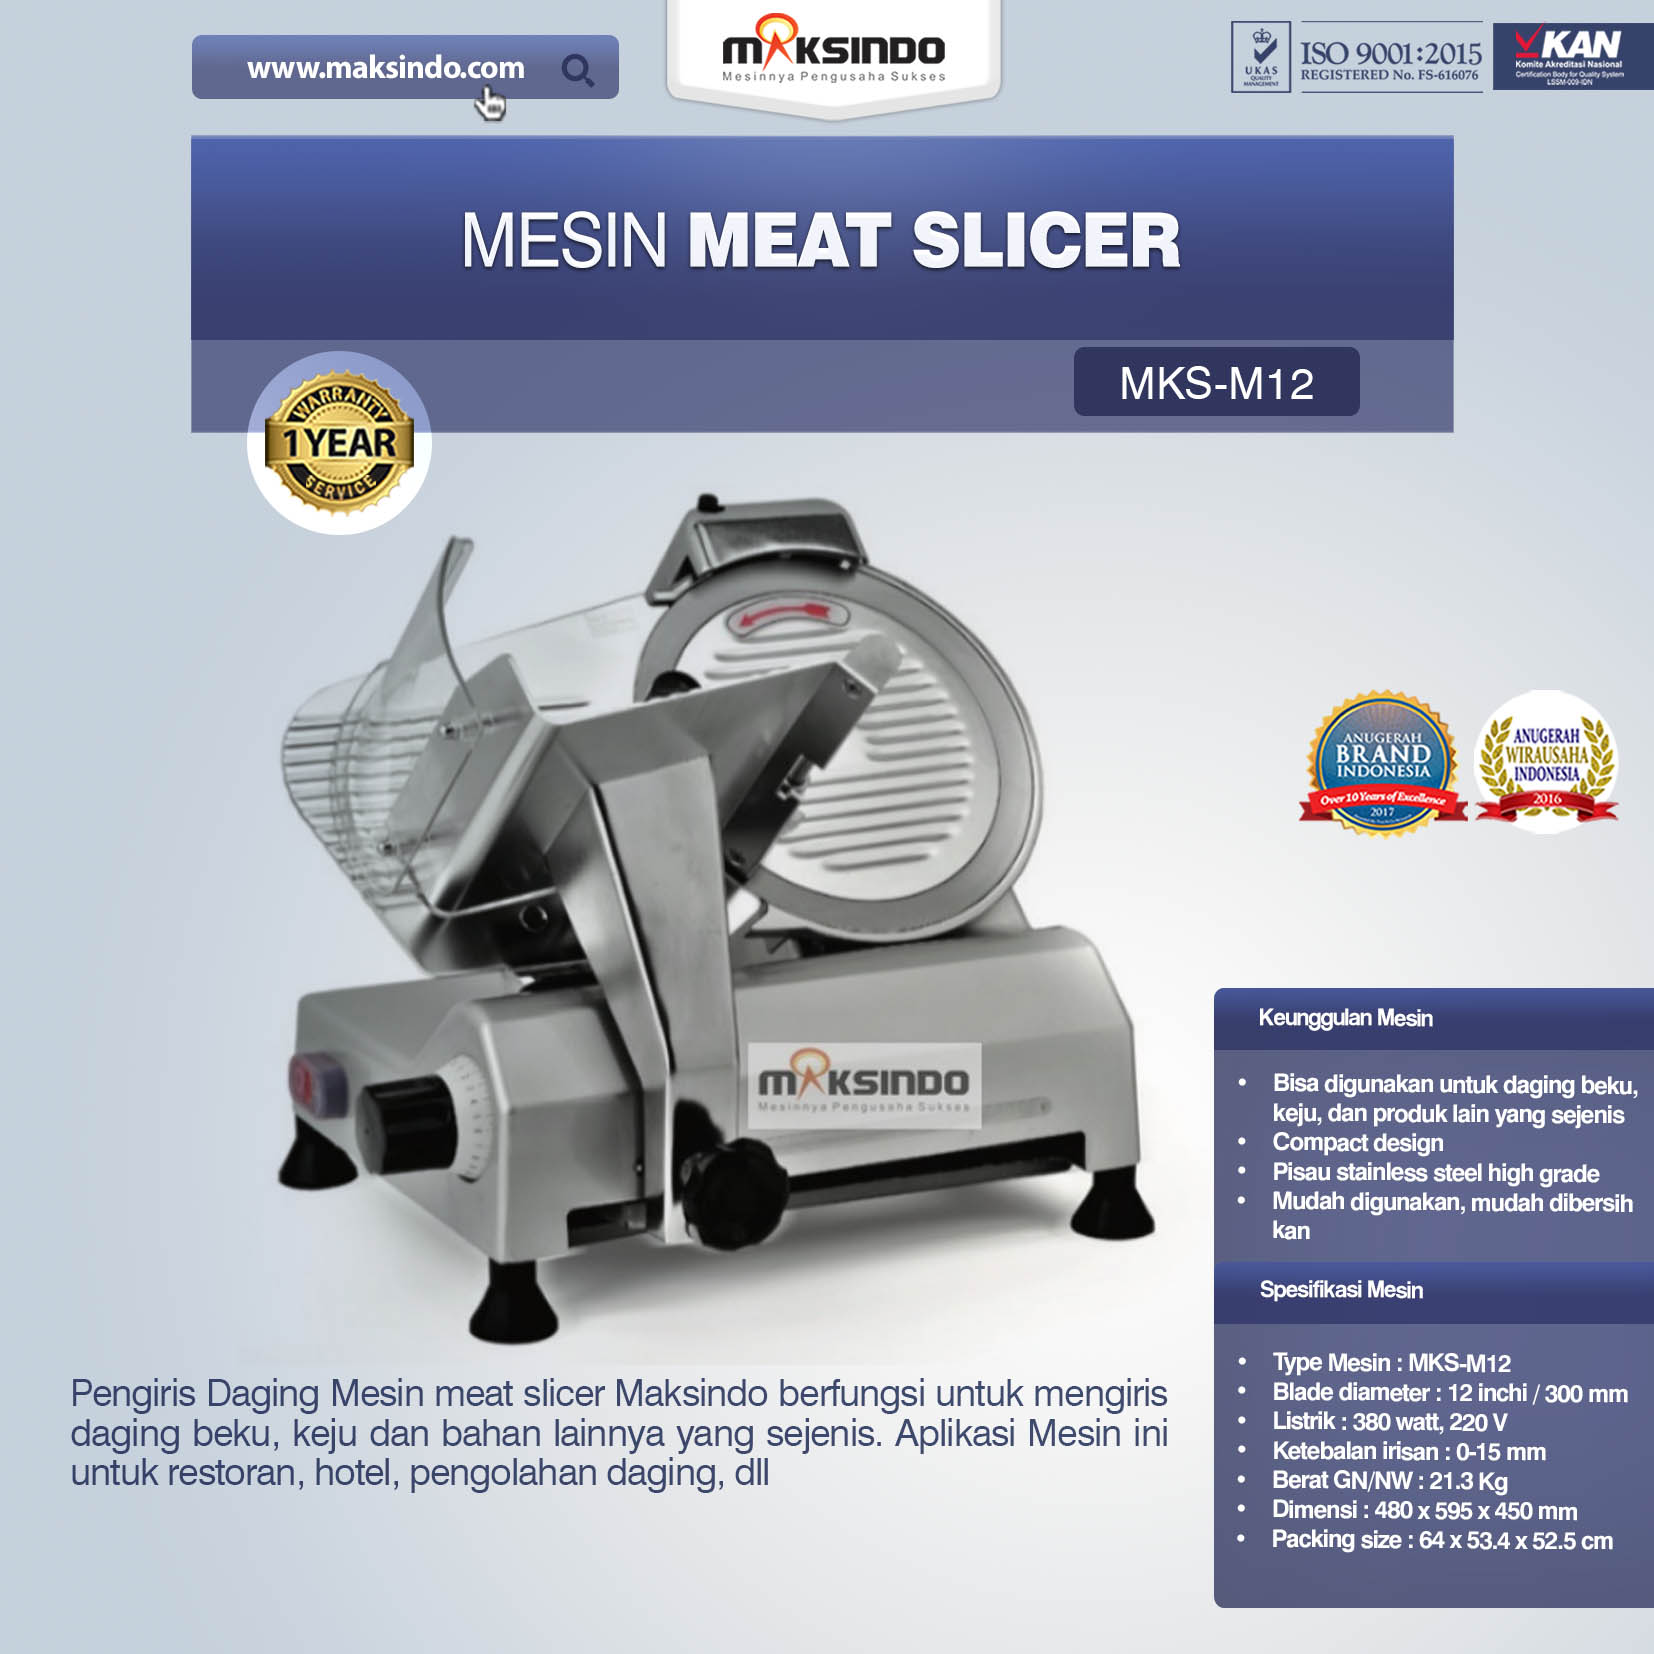 Jual Mesin Meat Slicer (MKS-M12) di Malang